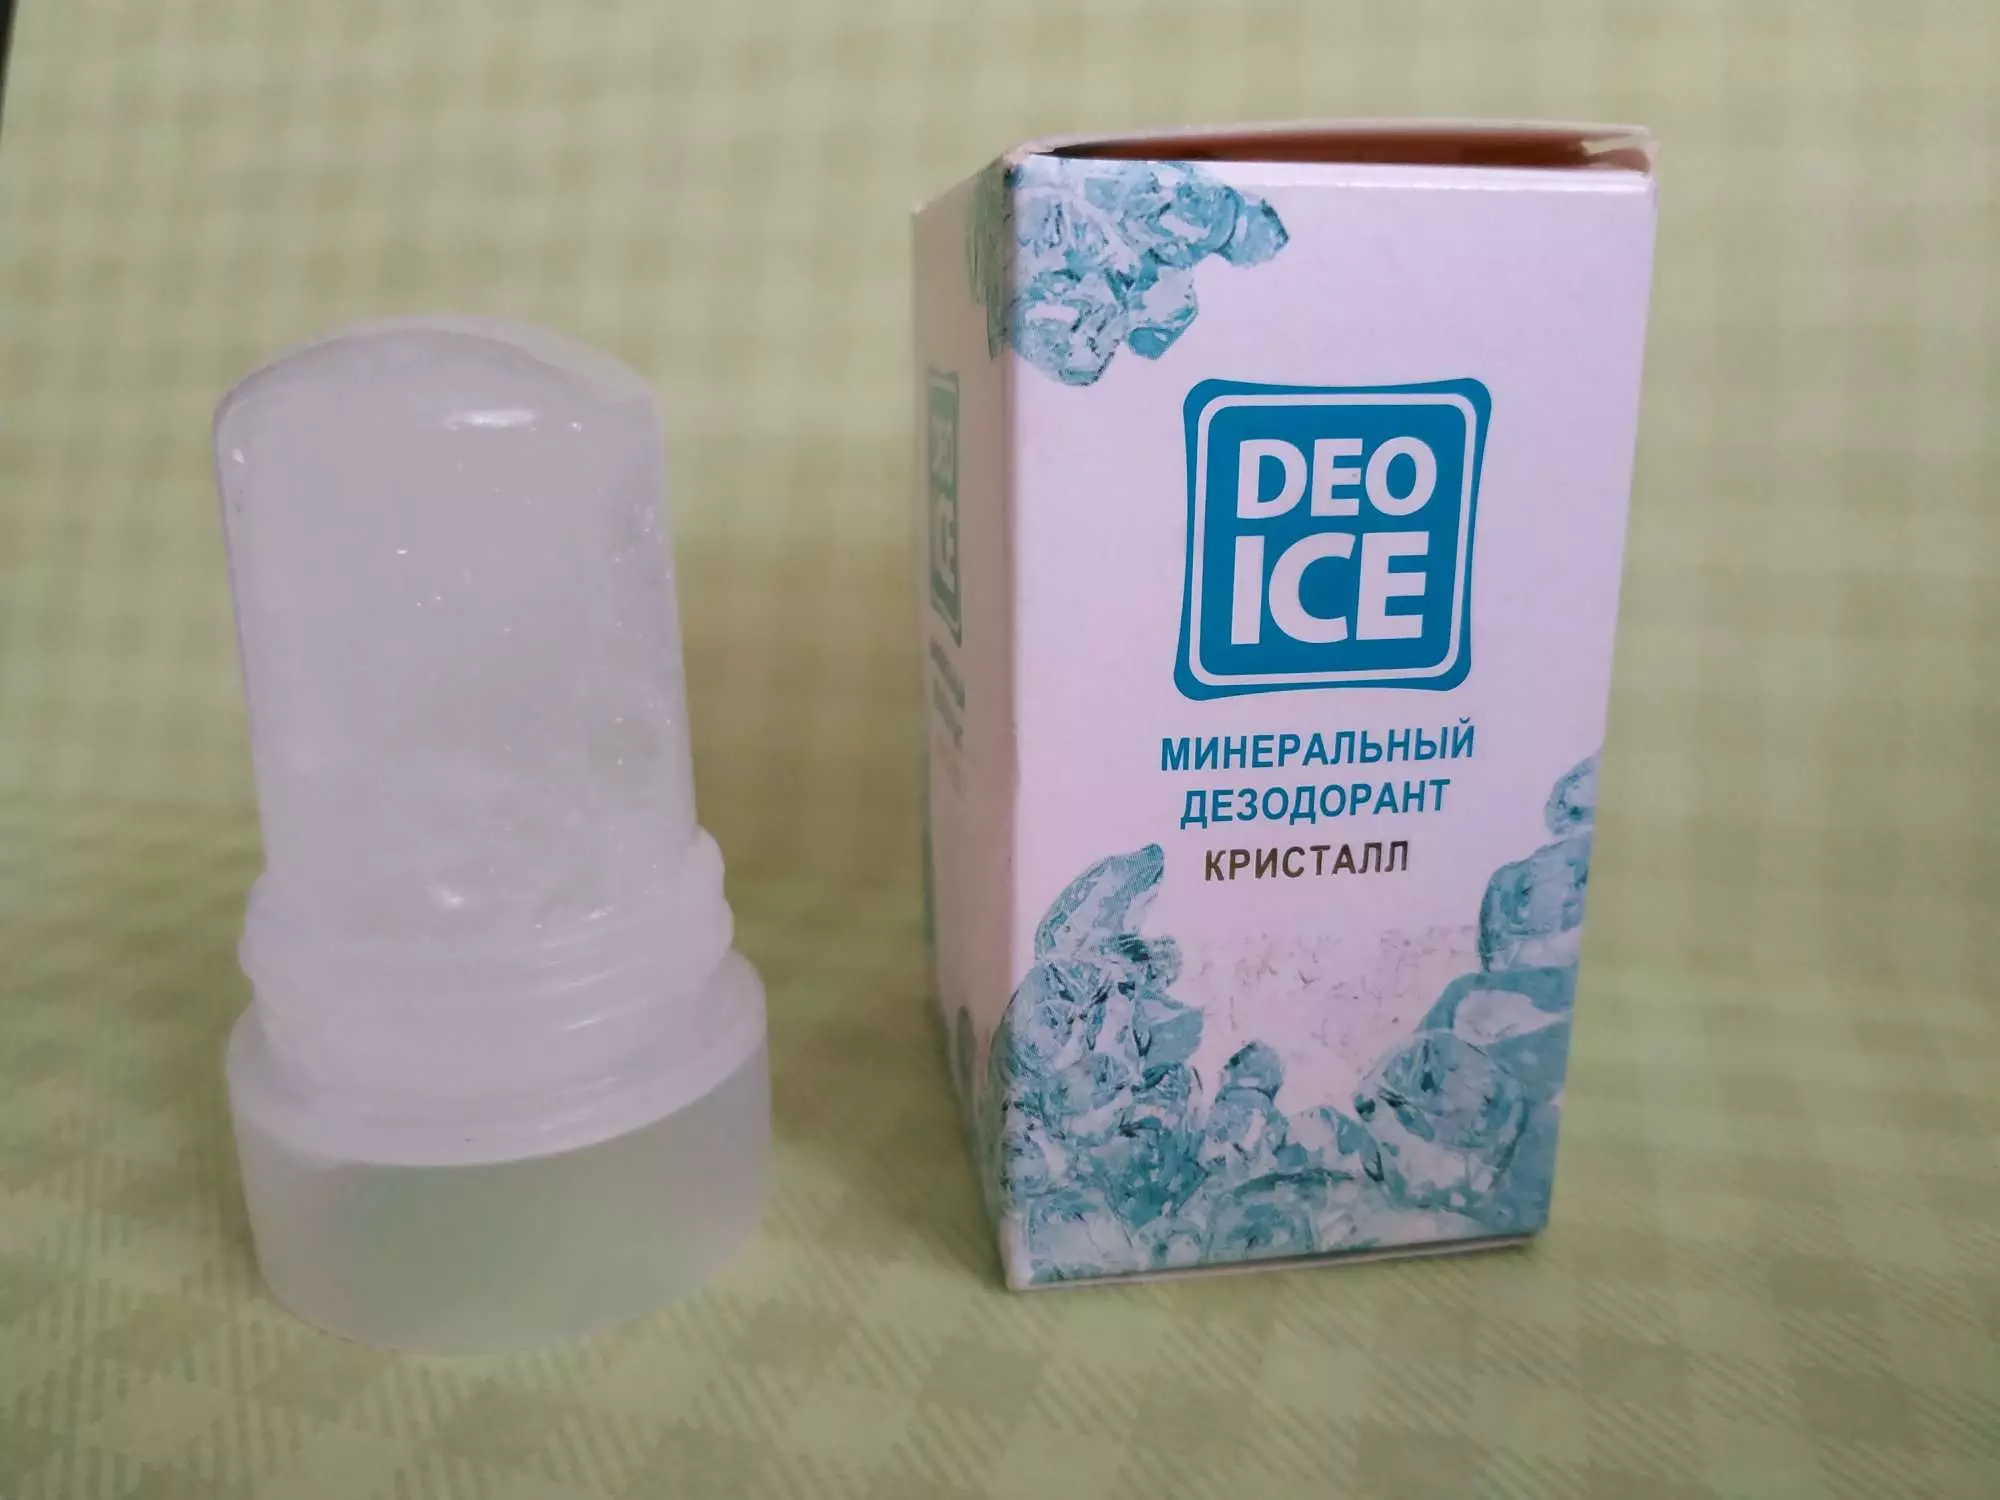 Як правильно користуватися дезодорантом? Як його використовувати, щоб не потіти? Чи можна використовувати перед або після лазерної епіляції, шугаринга? 4544_13